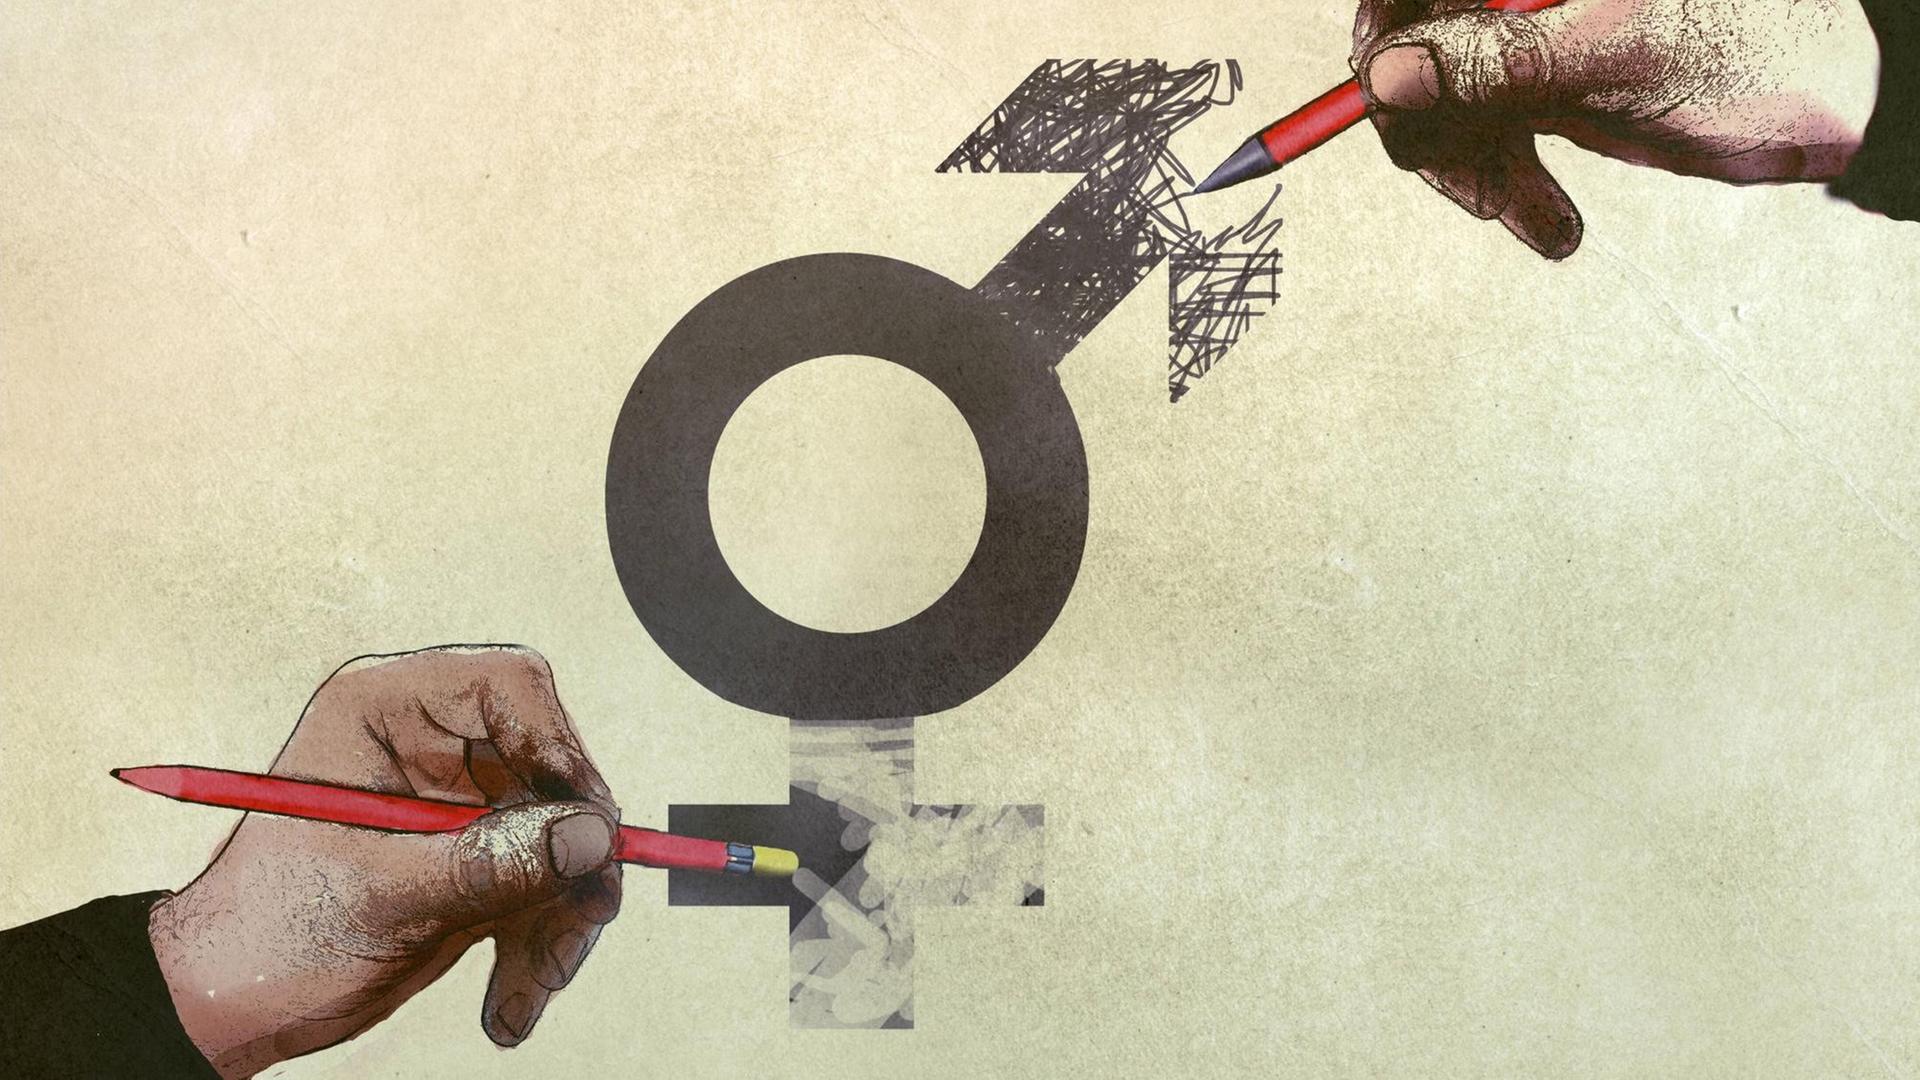 Eine Illustration eines Männlichkeits-Symbols, dessen Pfeil wegradiert und durch ein Plus unten ersetzt wird, was dann ein Weiblichkeits-Symbol ergibt